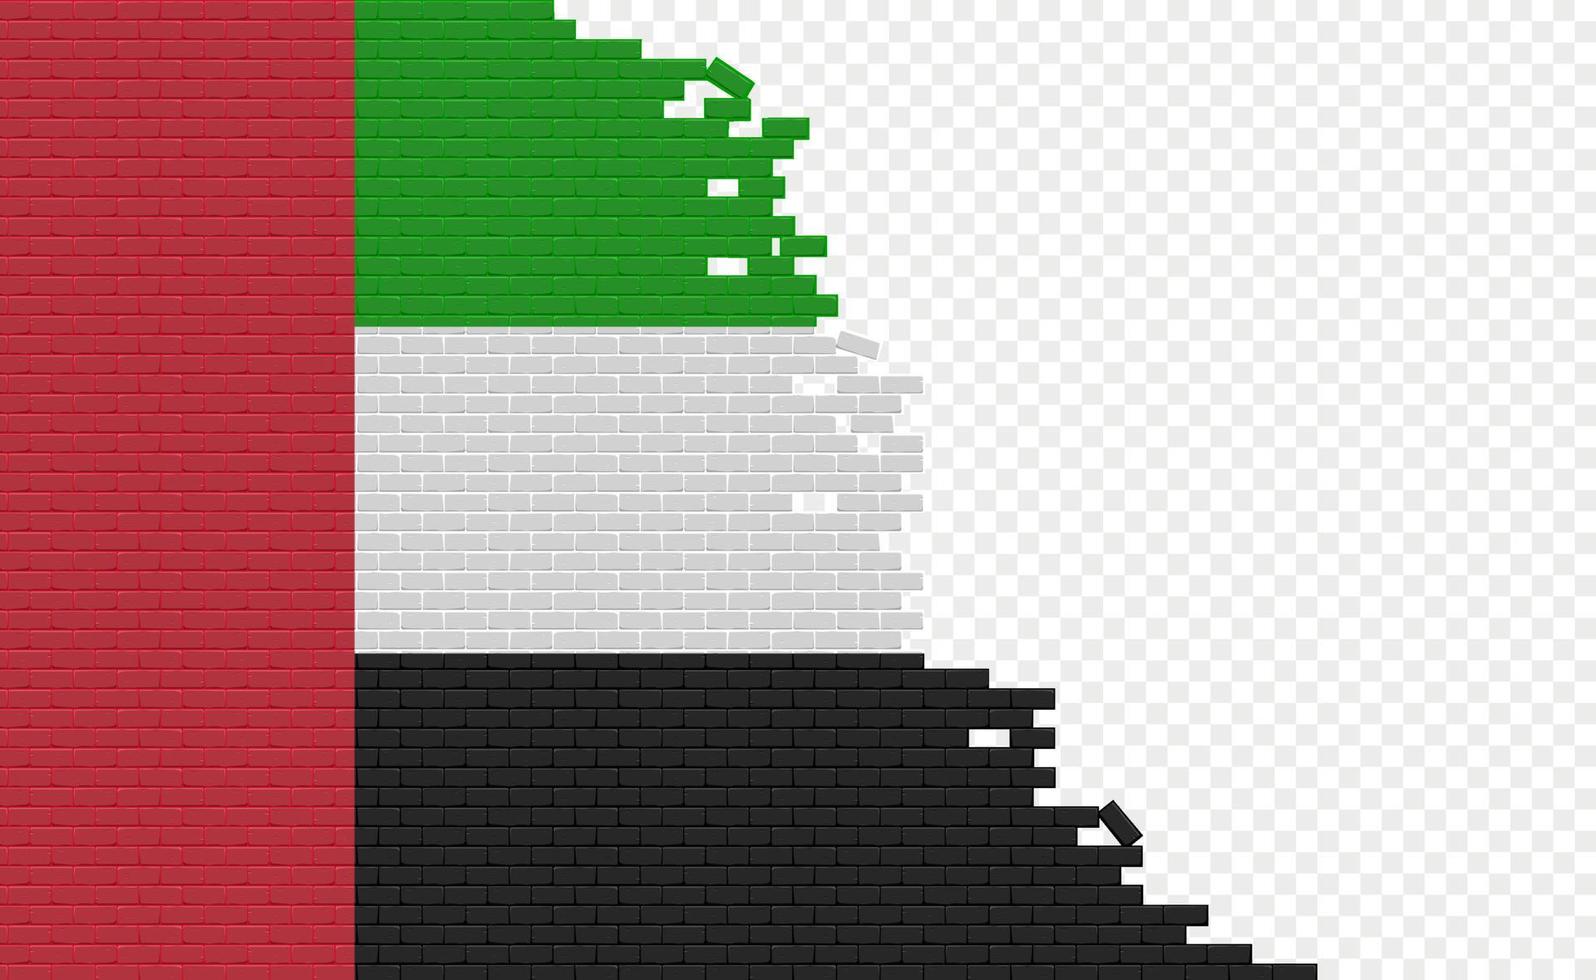 bandera de los emiratos árabes unidos en la pared de ladrillos rotos. campo de bandera vacío de otro país. comparación de países. fácil edición y vector en grupos.